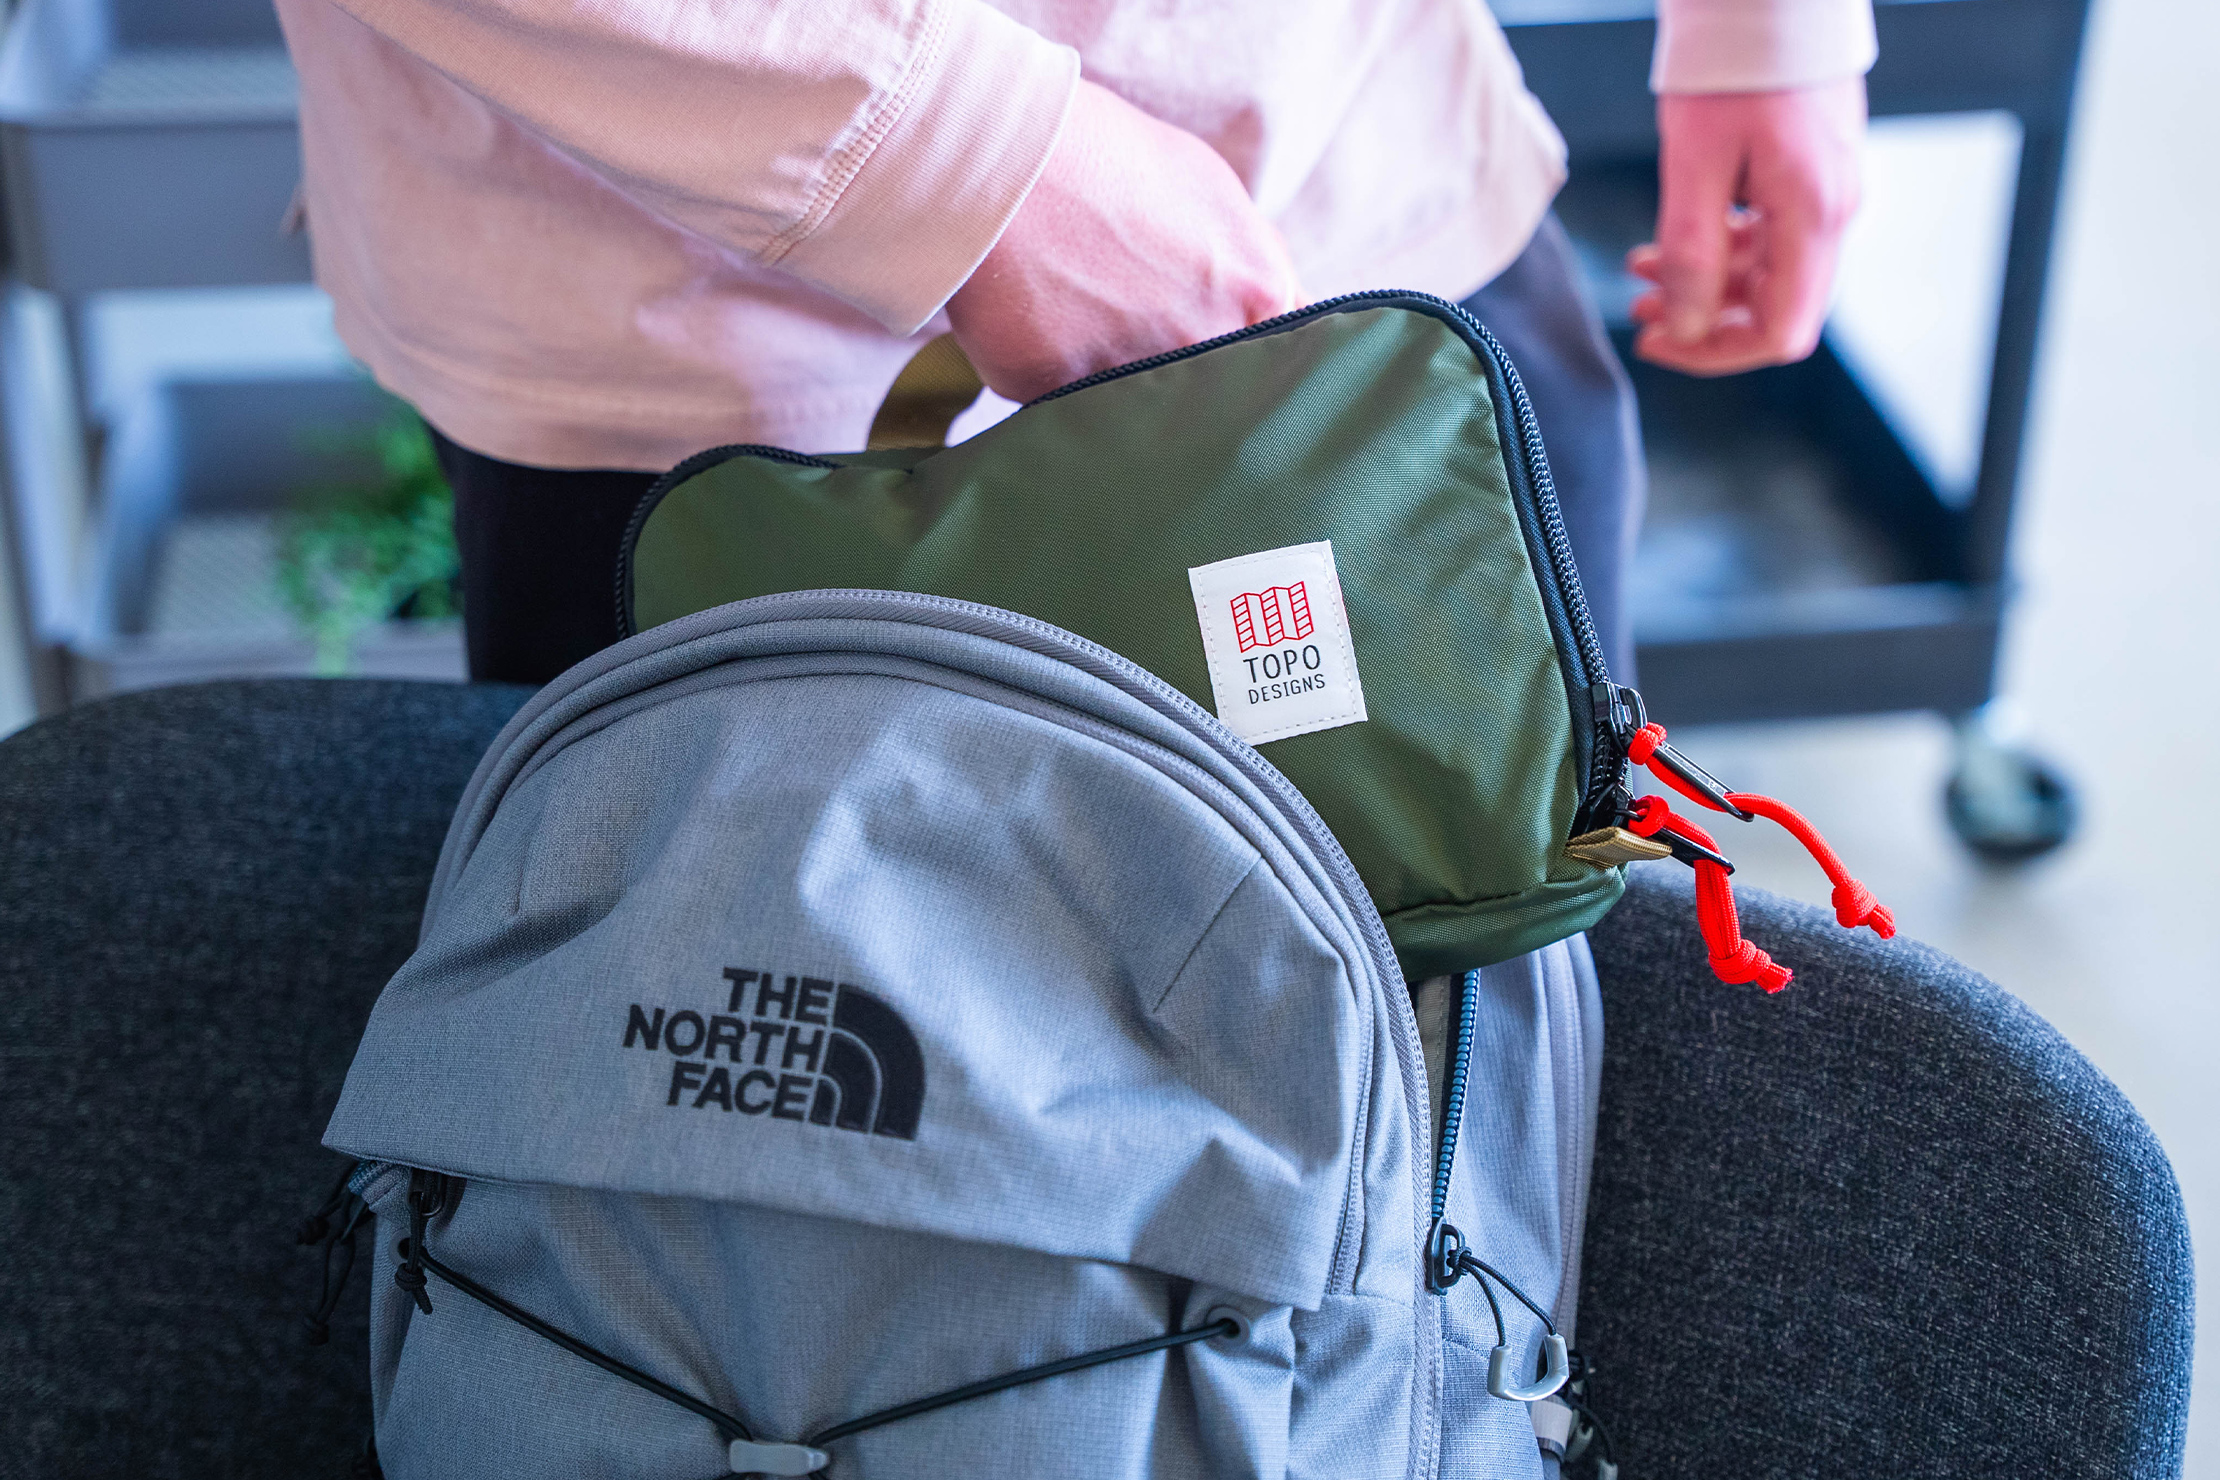 Topo Designs Pack Bags In Bag